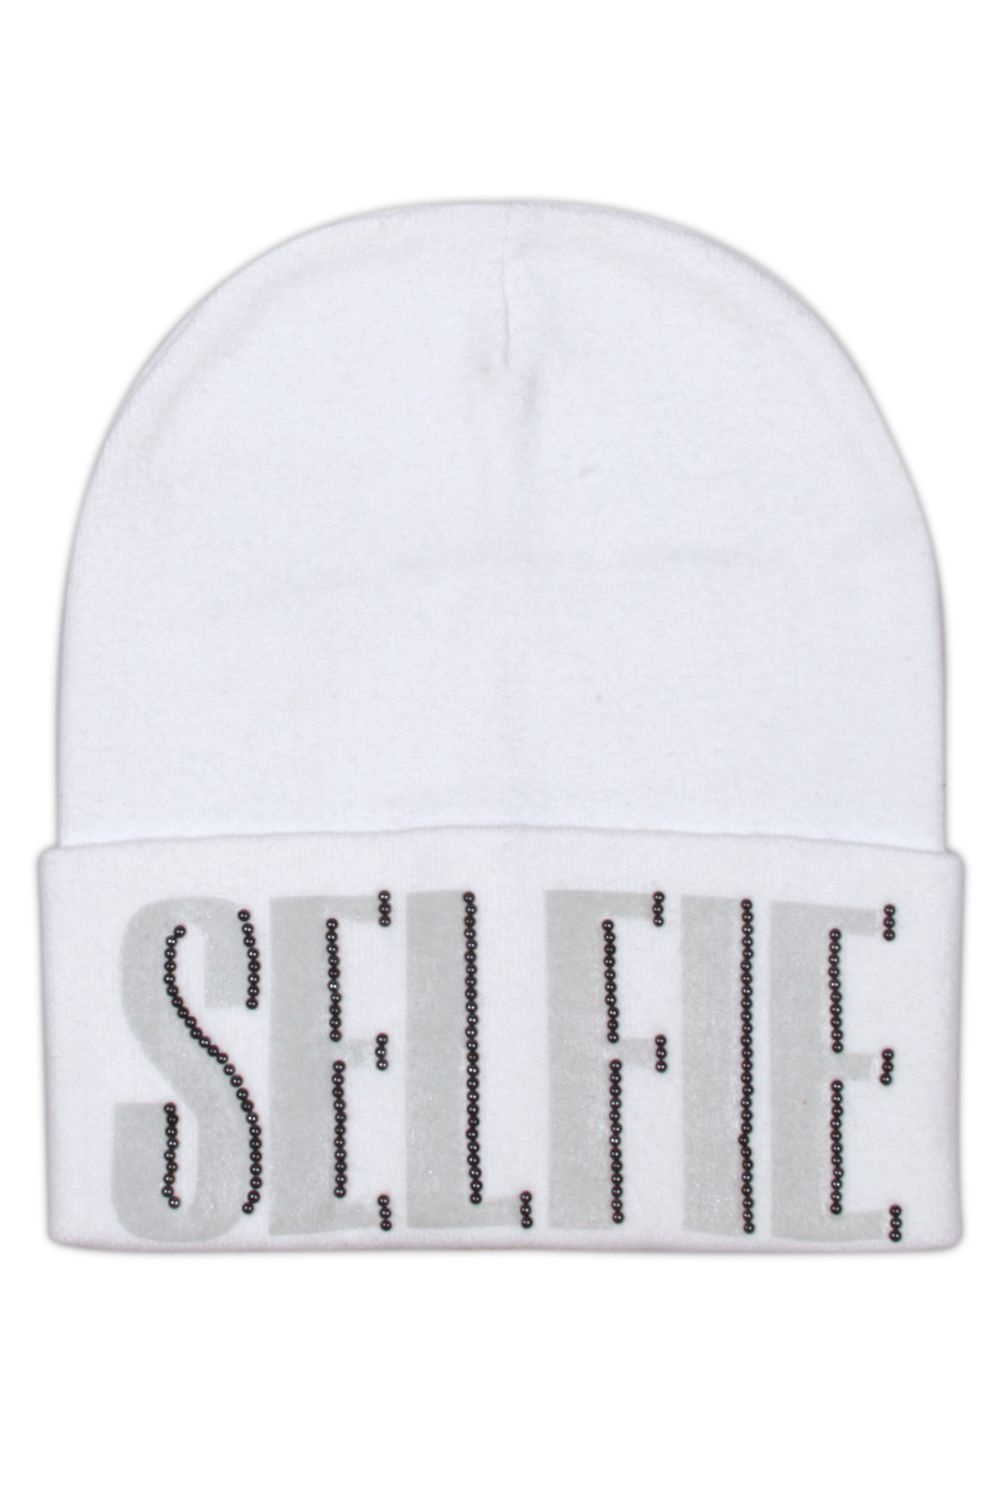 Шапка RnB "Selfie" для девочки 29515-1565 белый Noble People "Selfie", Российская Федерация